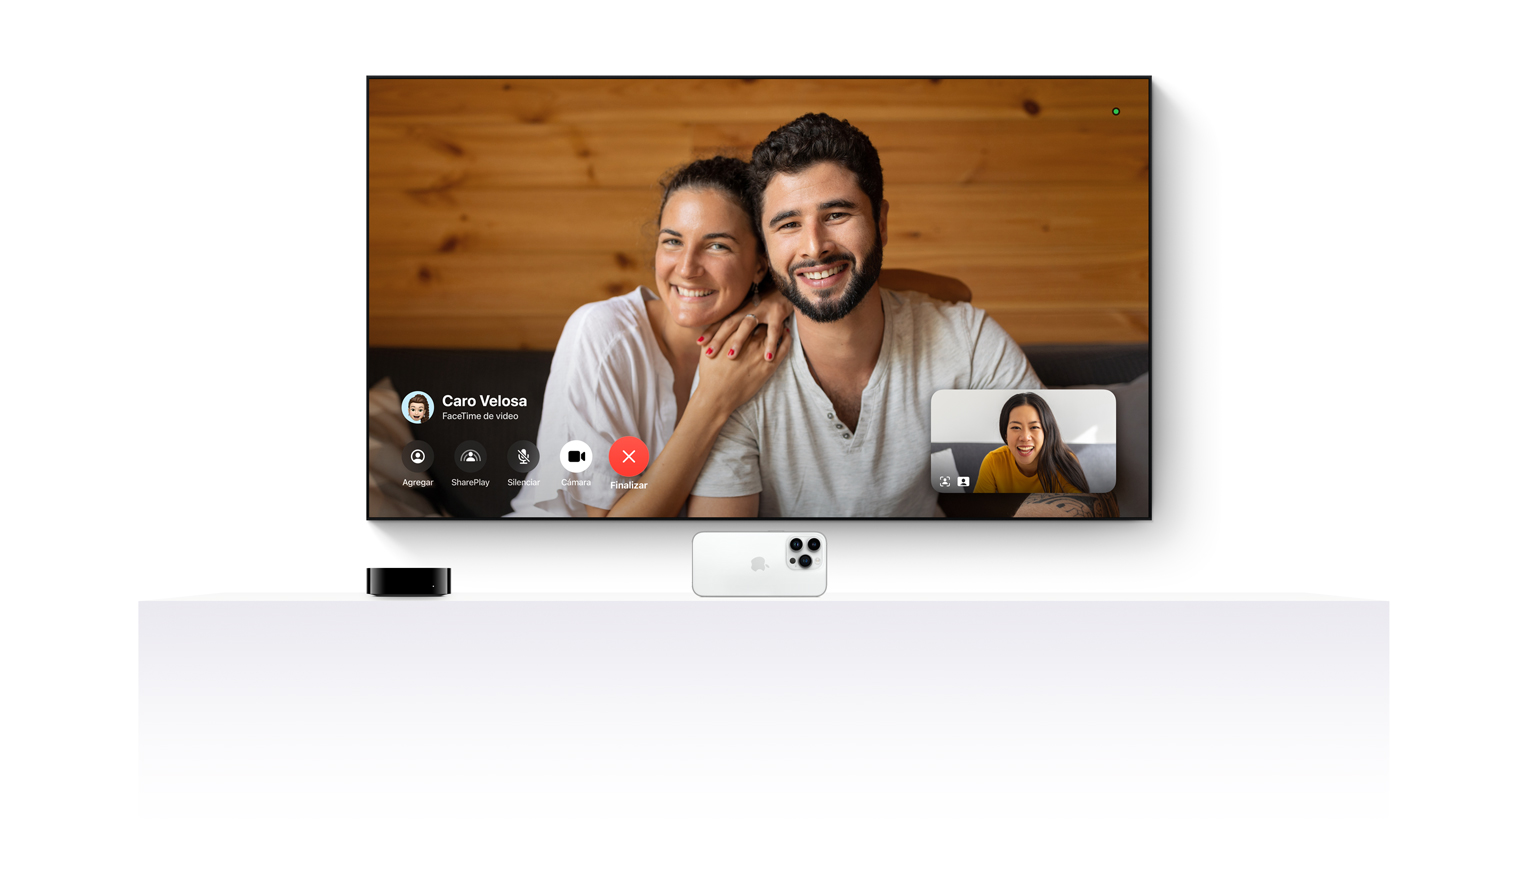 Un Apple TV 4K conectado a un iPhone muestra FaceTime en una televisión de pantalla plana